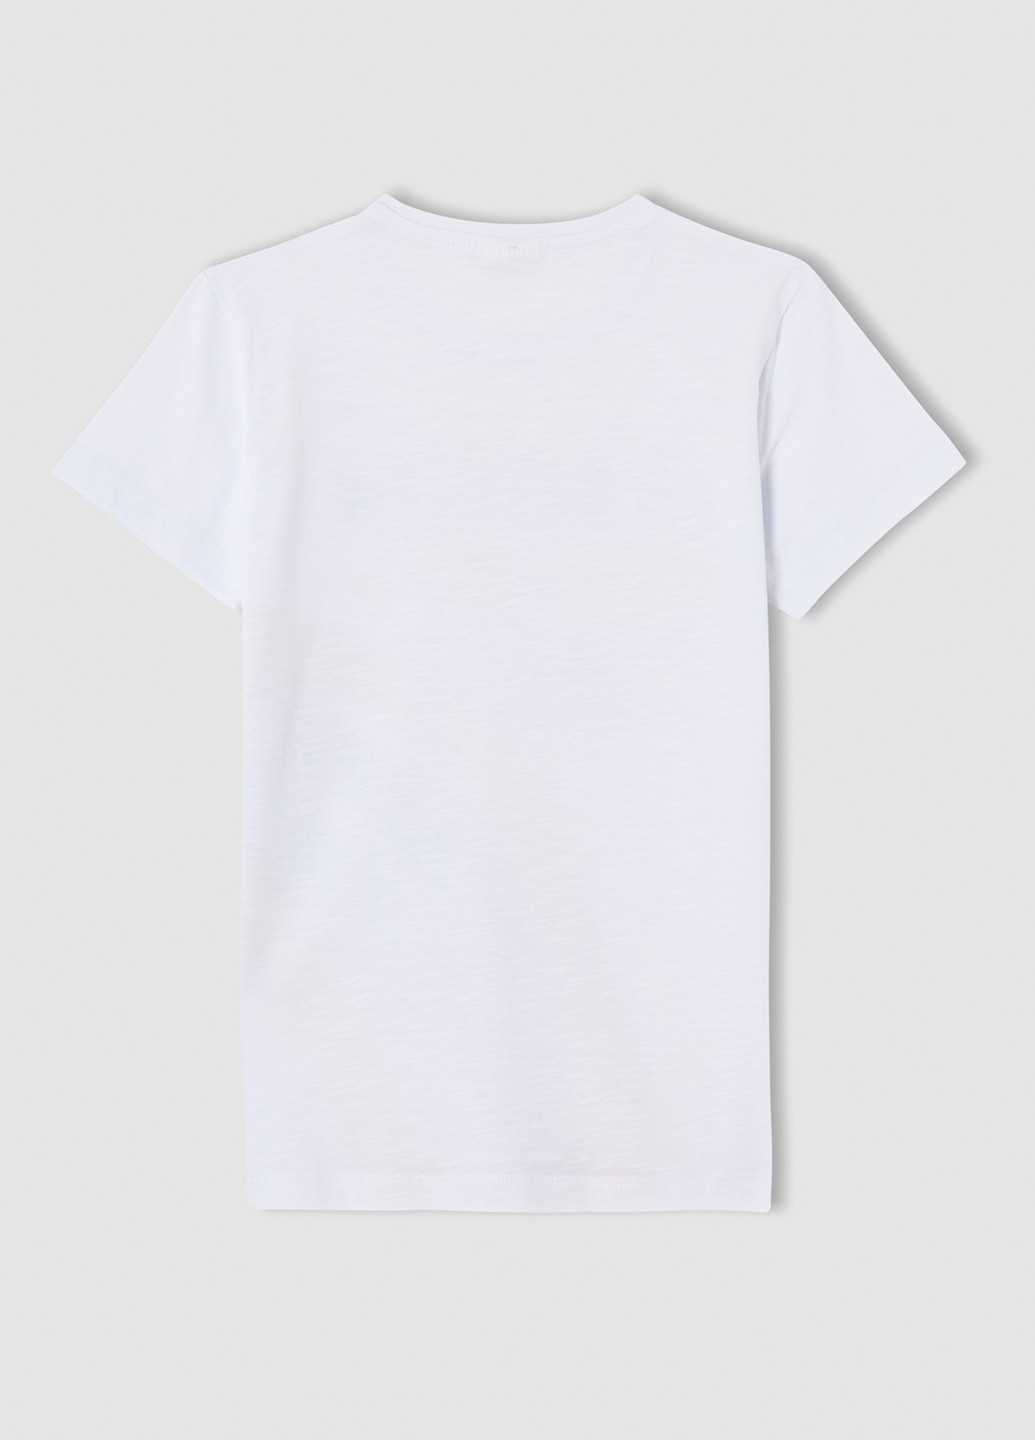 Комбінована всесезон піжама (футболка, шорти) футболка + шорти DeFacto